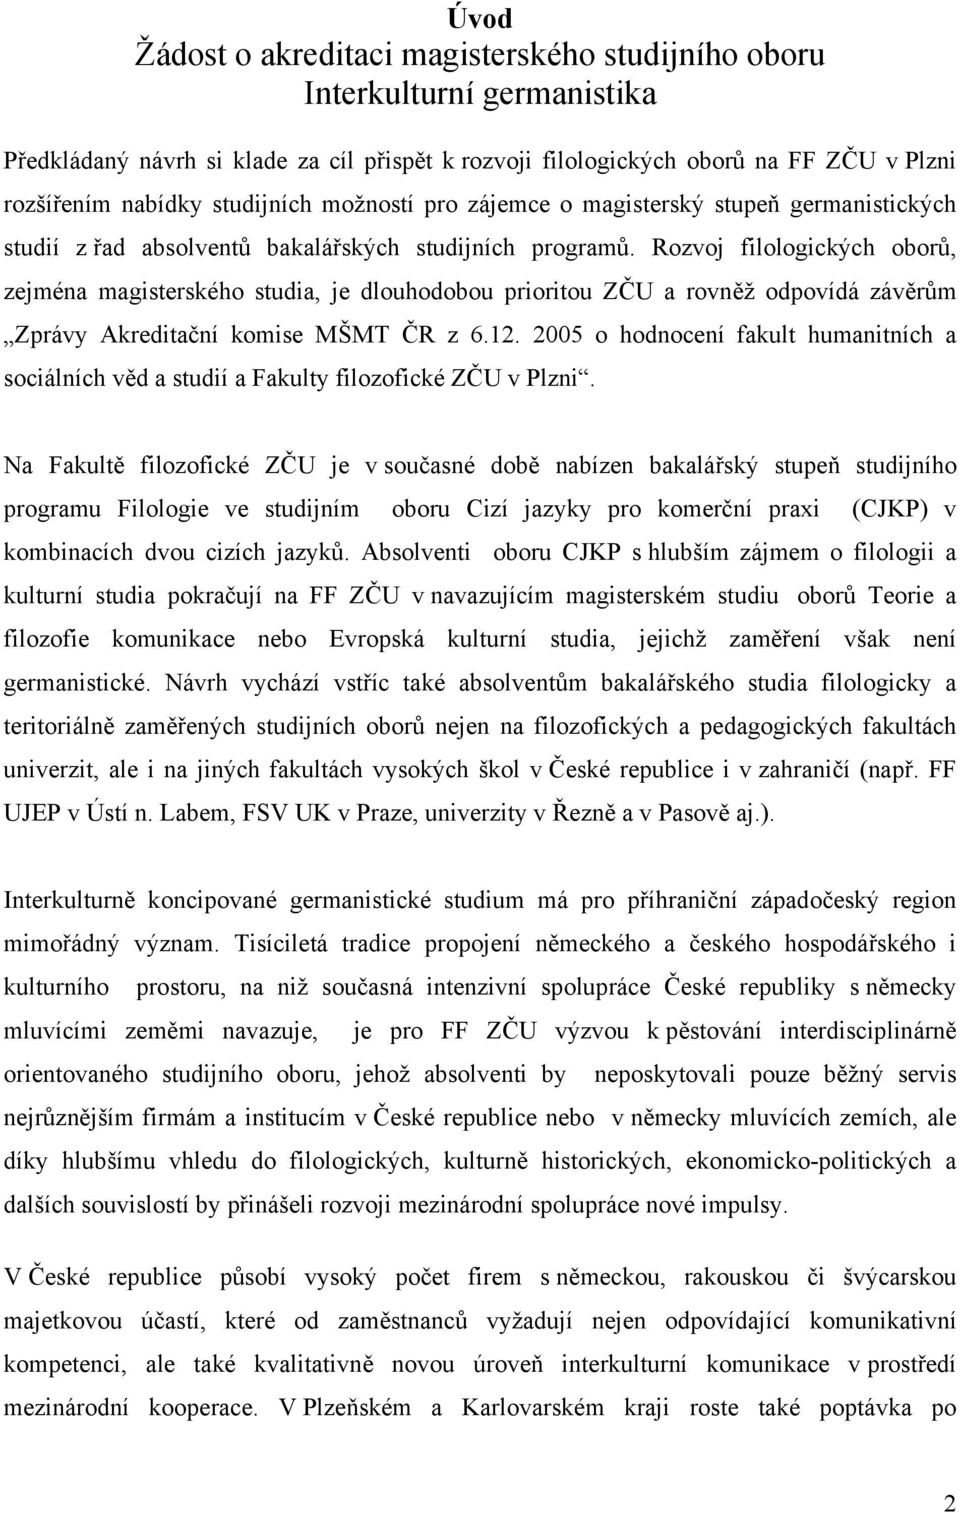 Rozvoj filologických oborů, zejména magisterského studia, je dlouhodobou prioritou ZČU a rovněž odpovídá závěrům Zprávy Akreditační komise MŠMT ČR z 6.12.